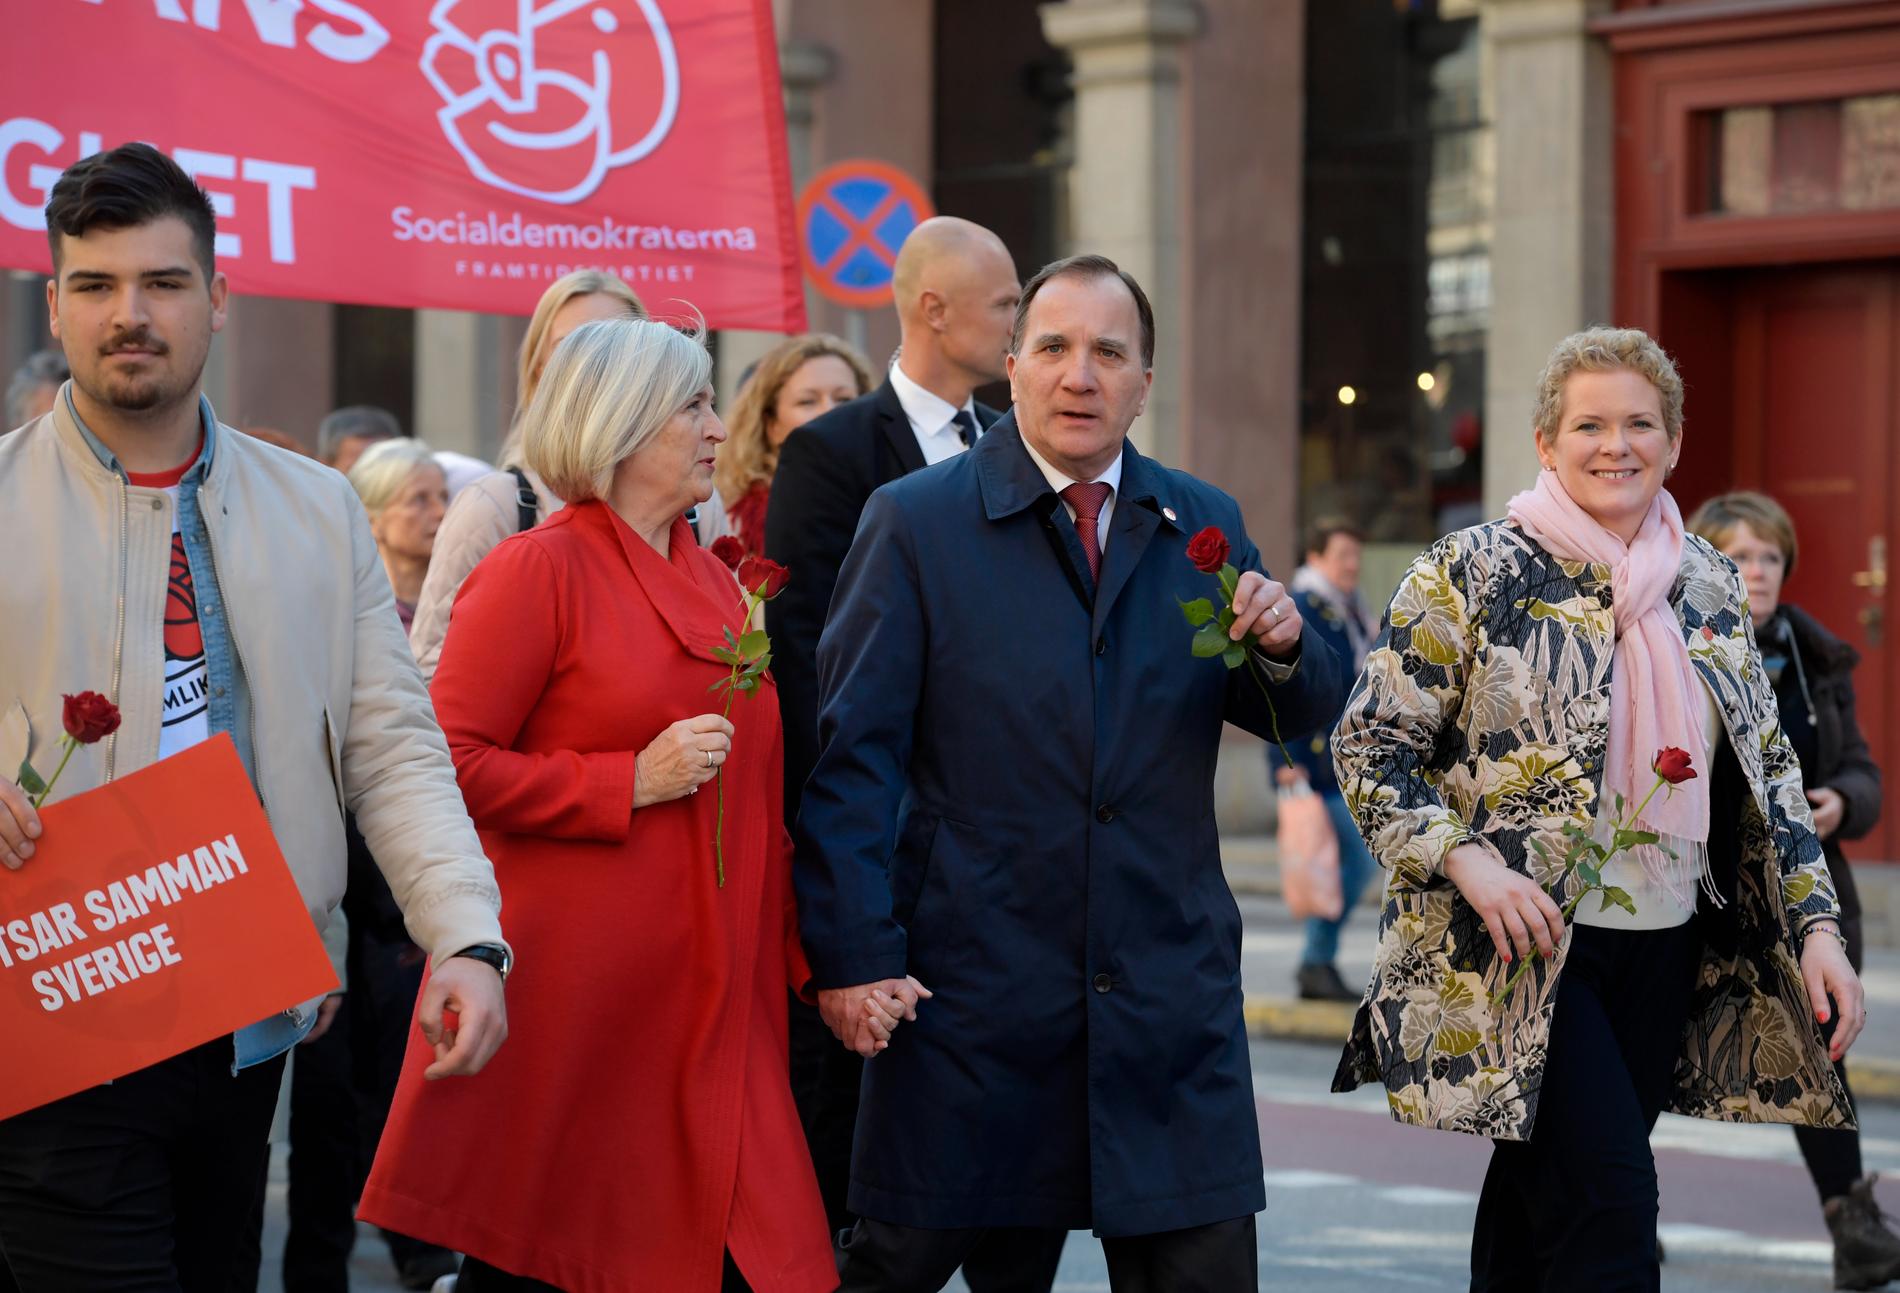 Socialdemokraternas partiordförande, statsminister Stefan Löfven, med hustrun Ulla Löfven (tv) och Stockholms finansborgarråd Karin Wanngård (S) förstamajtågar i Stockholm.